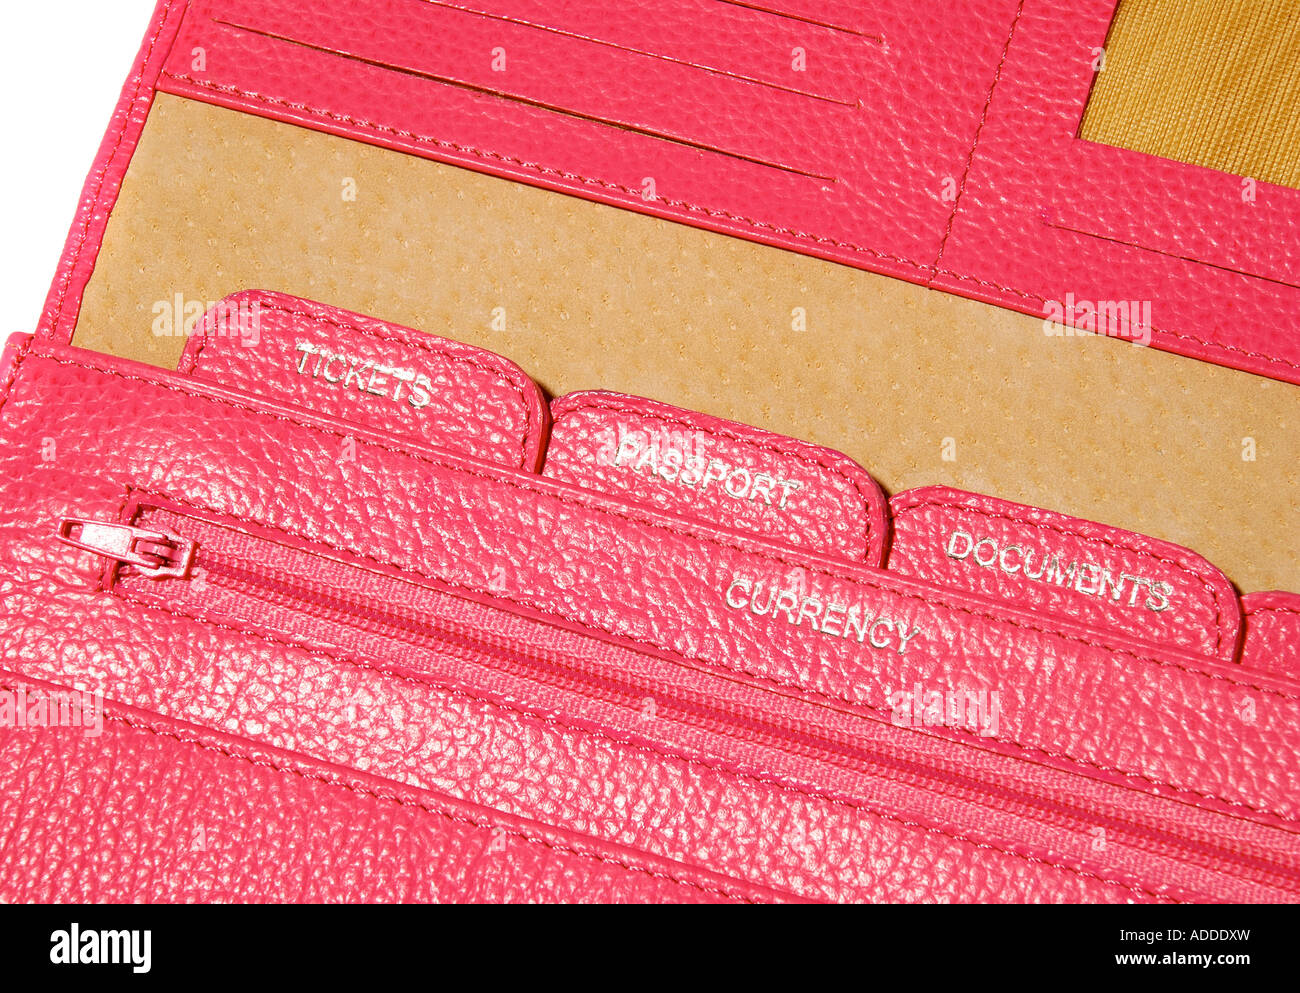 Dettaglio di una pelle di colore rosa del documento di viaggio portafoglio impostata per il passaporto e i biglietti aerei. Foto da Paddy McGuinness paddymcguinness Foto Stock